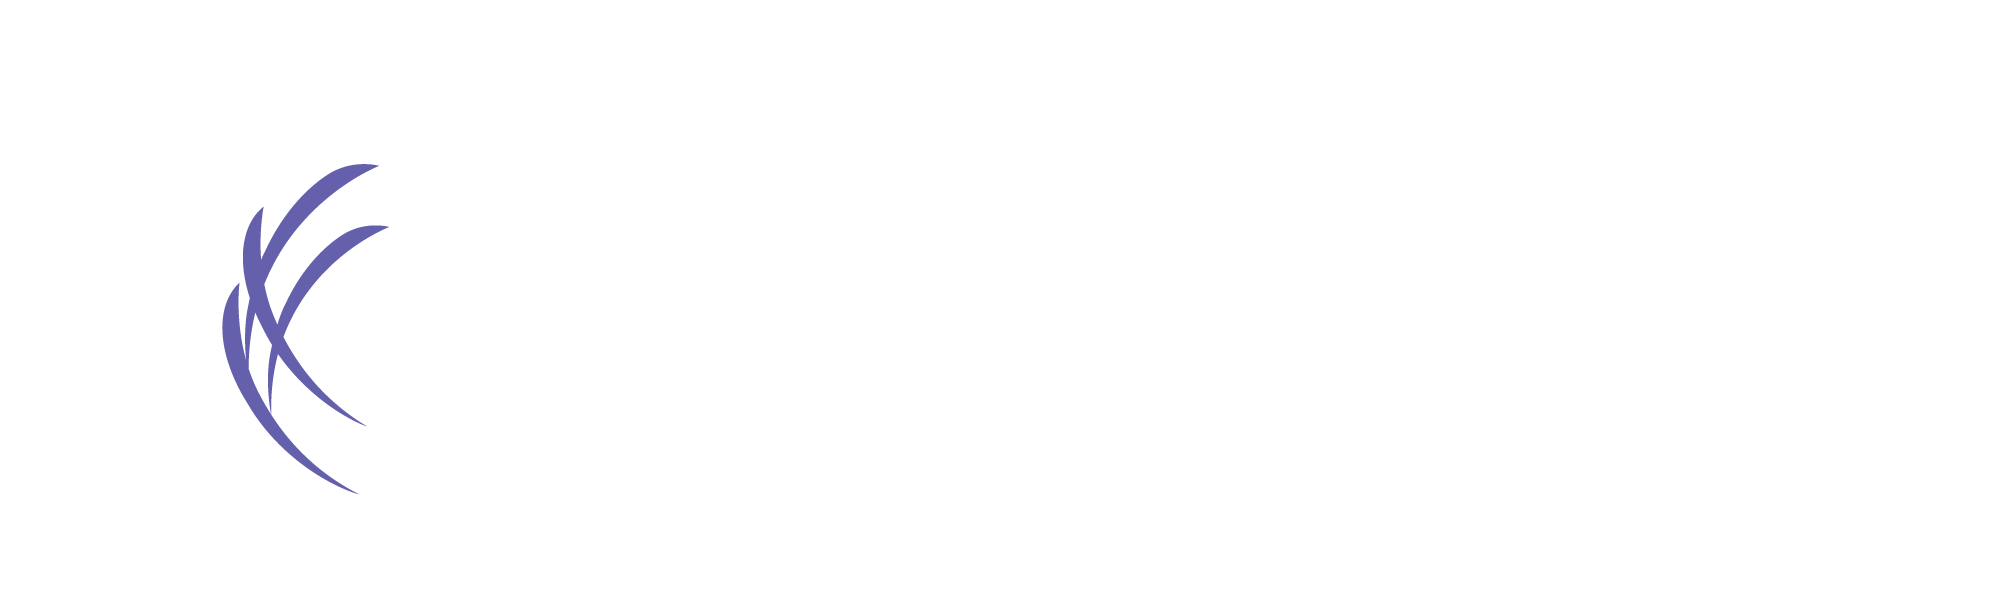 Kaptivate logo image